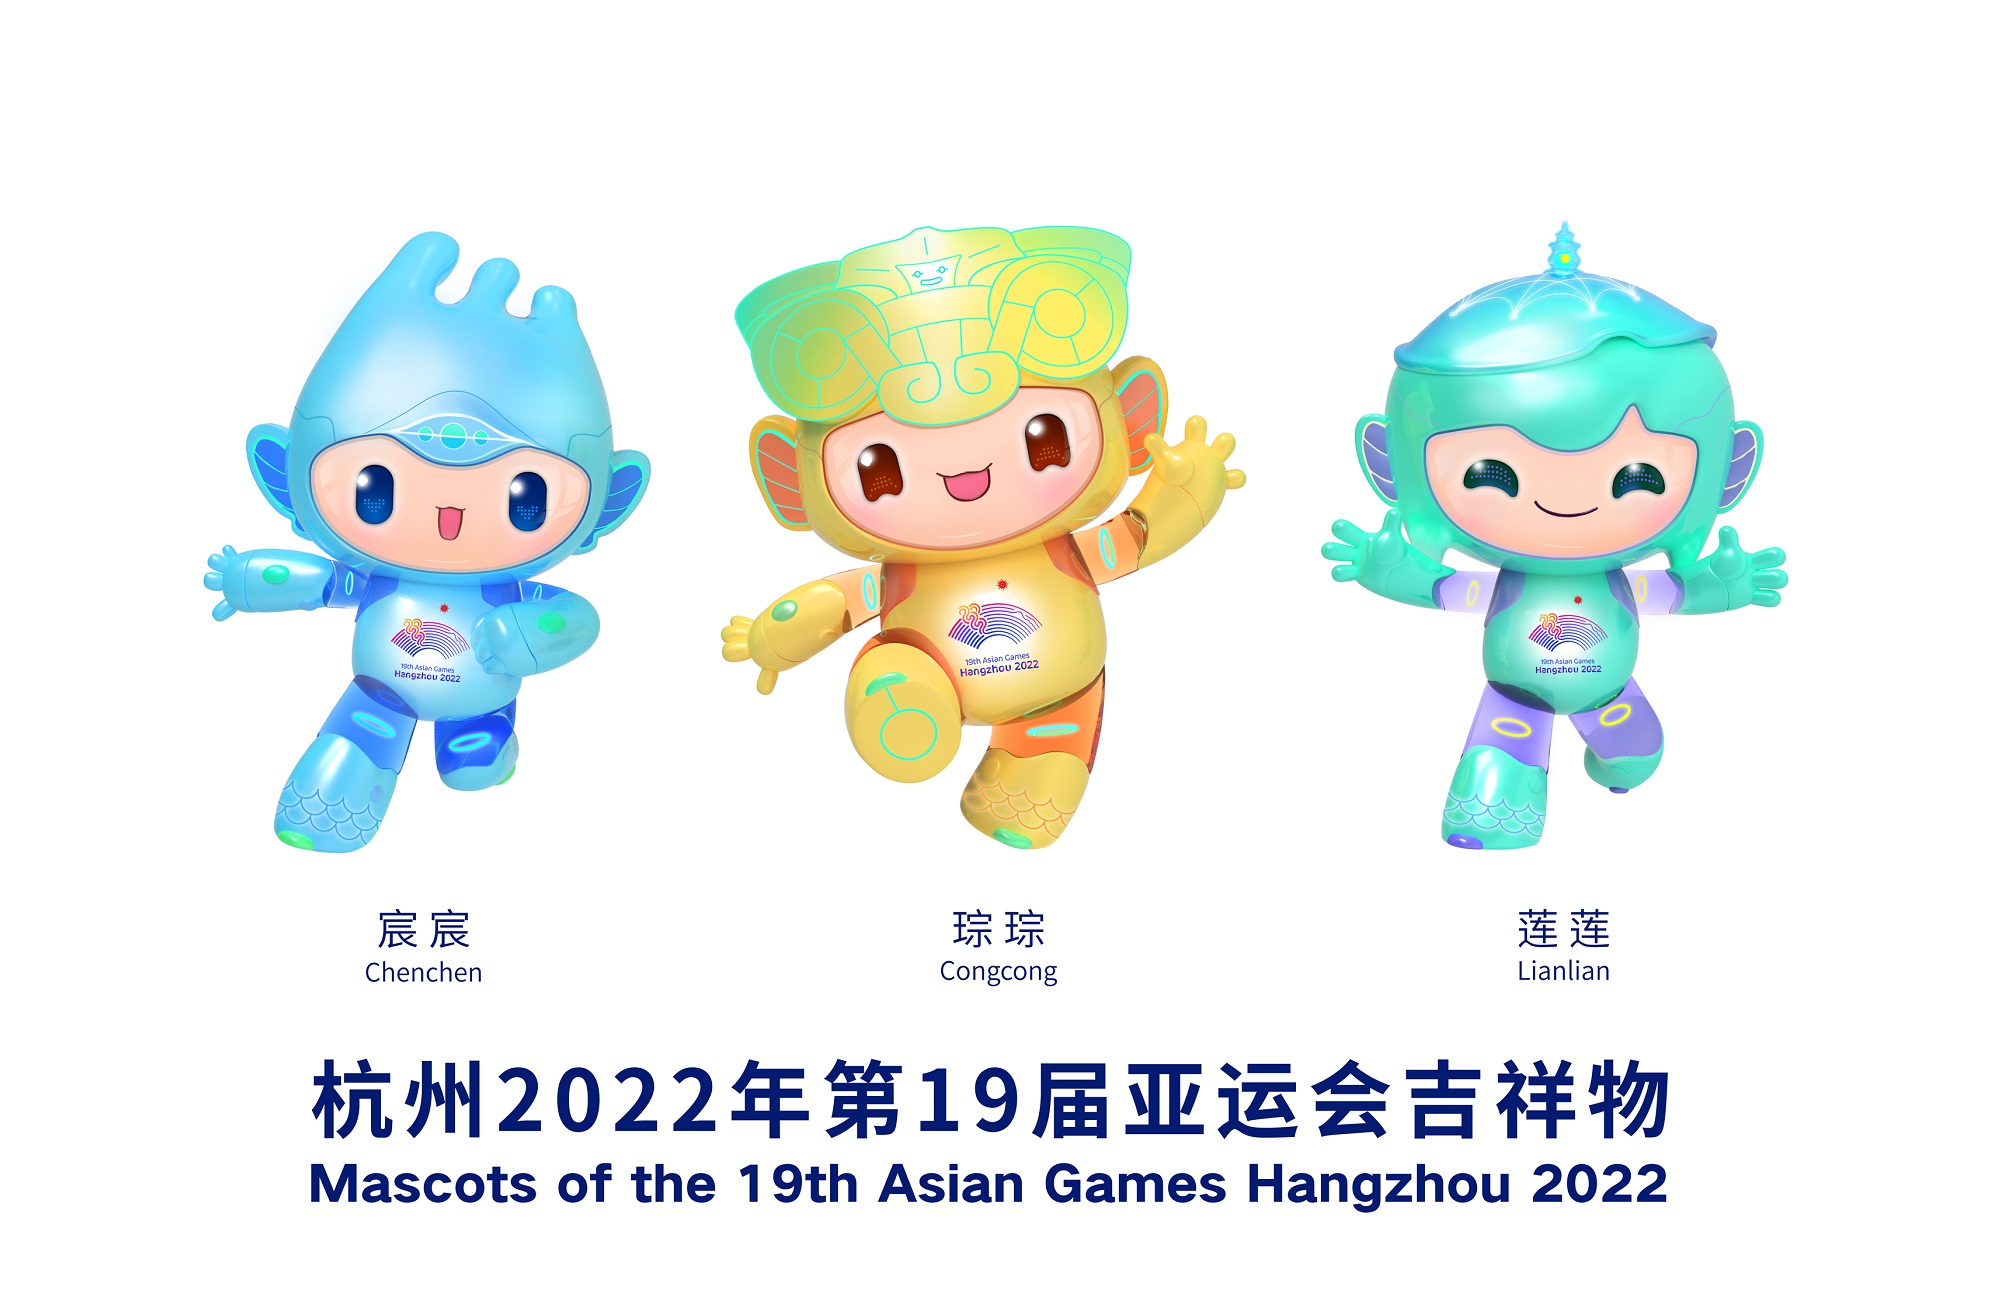 アジア大会の公式マスコット人形